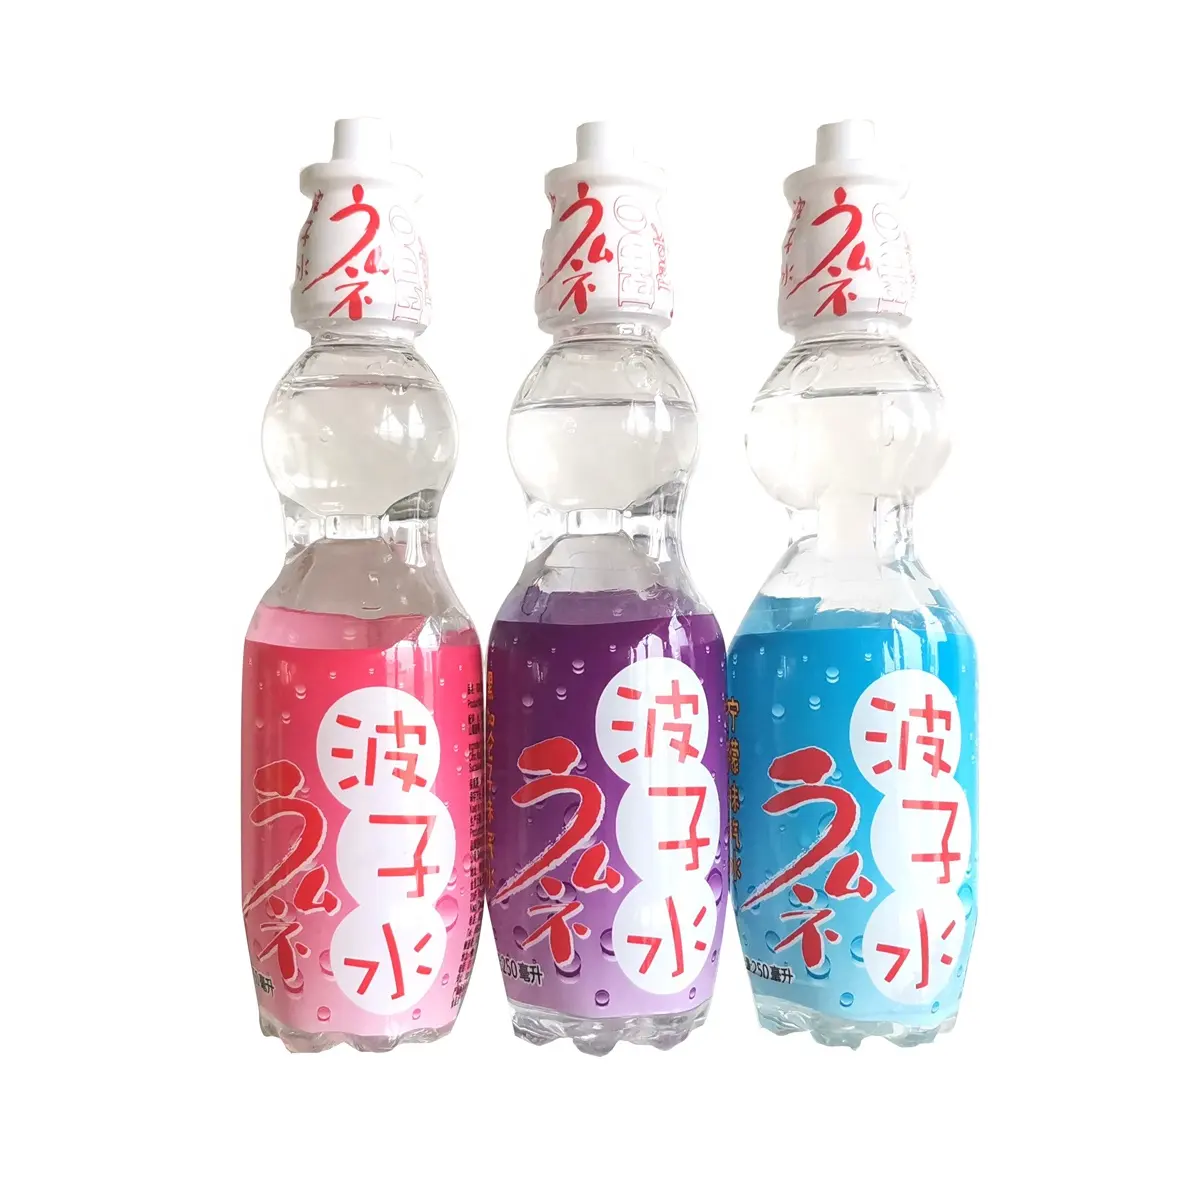 Мраморная содовая бутылка в японском стиле EDO pack